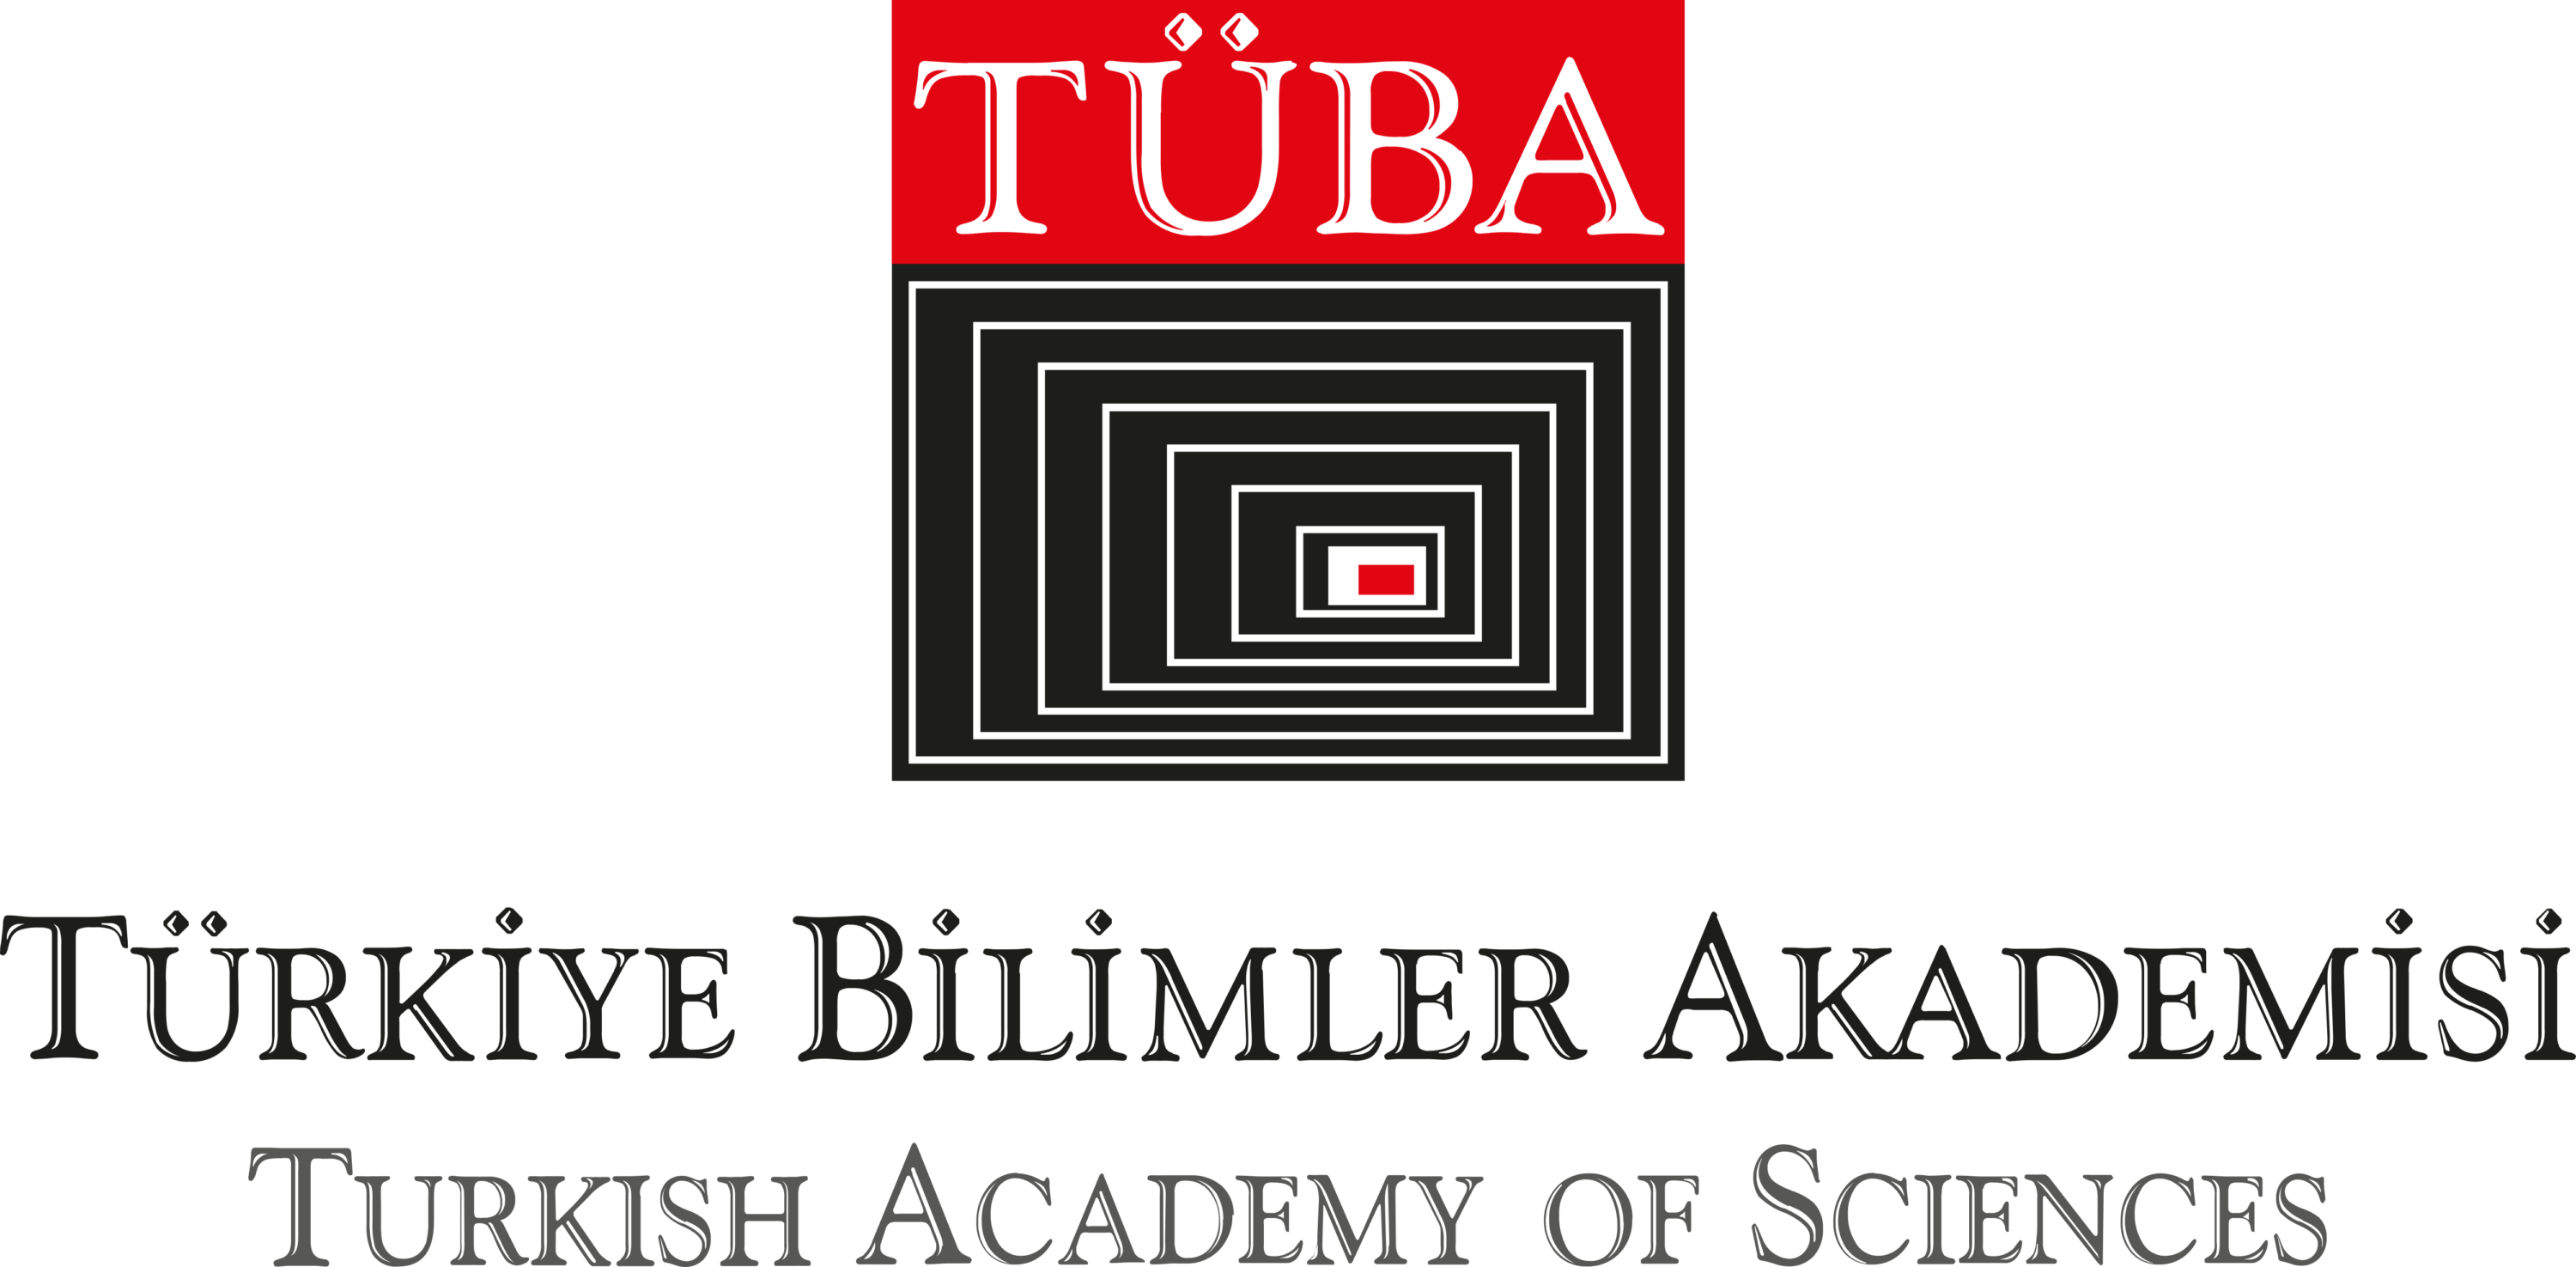 Turkiye Bilimler Akademisi TUBA Logo